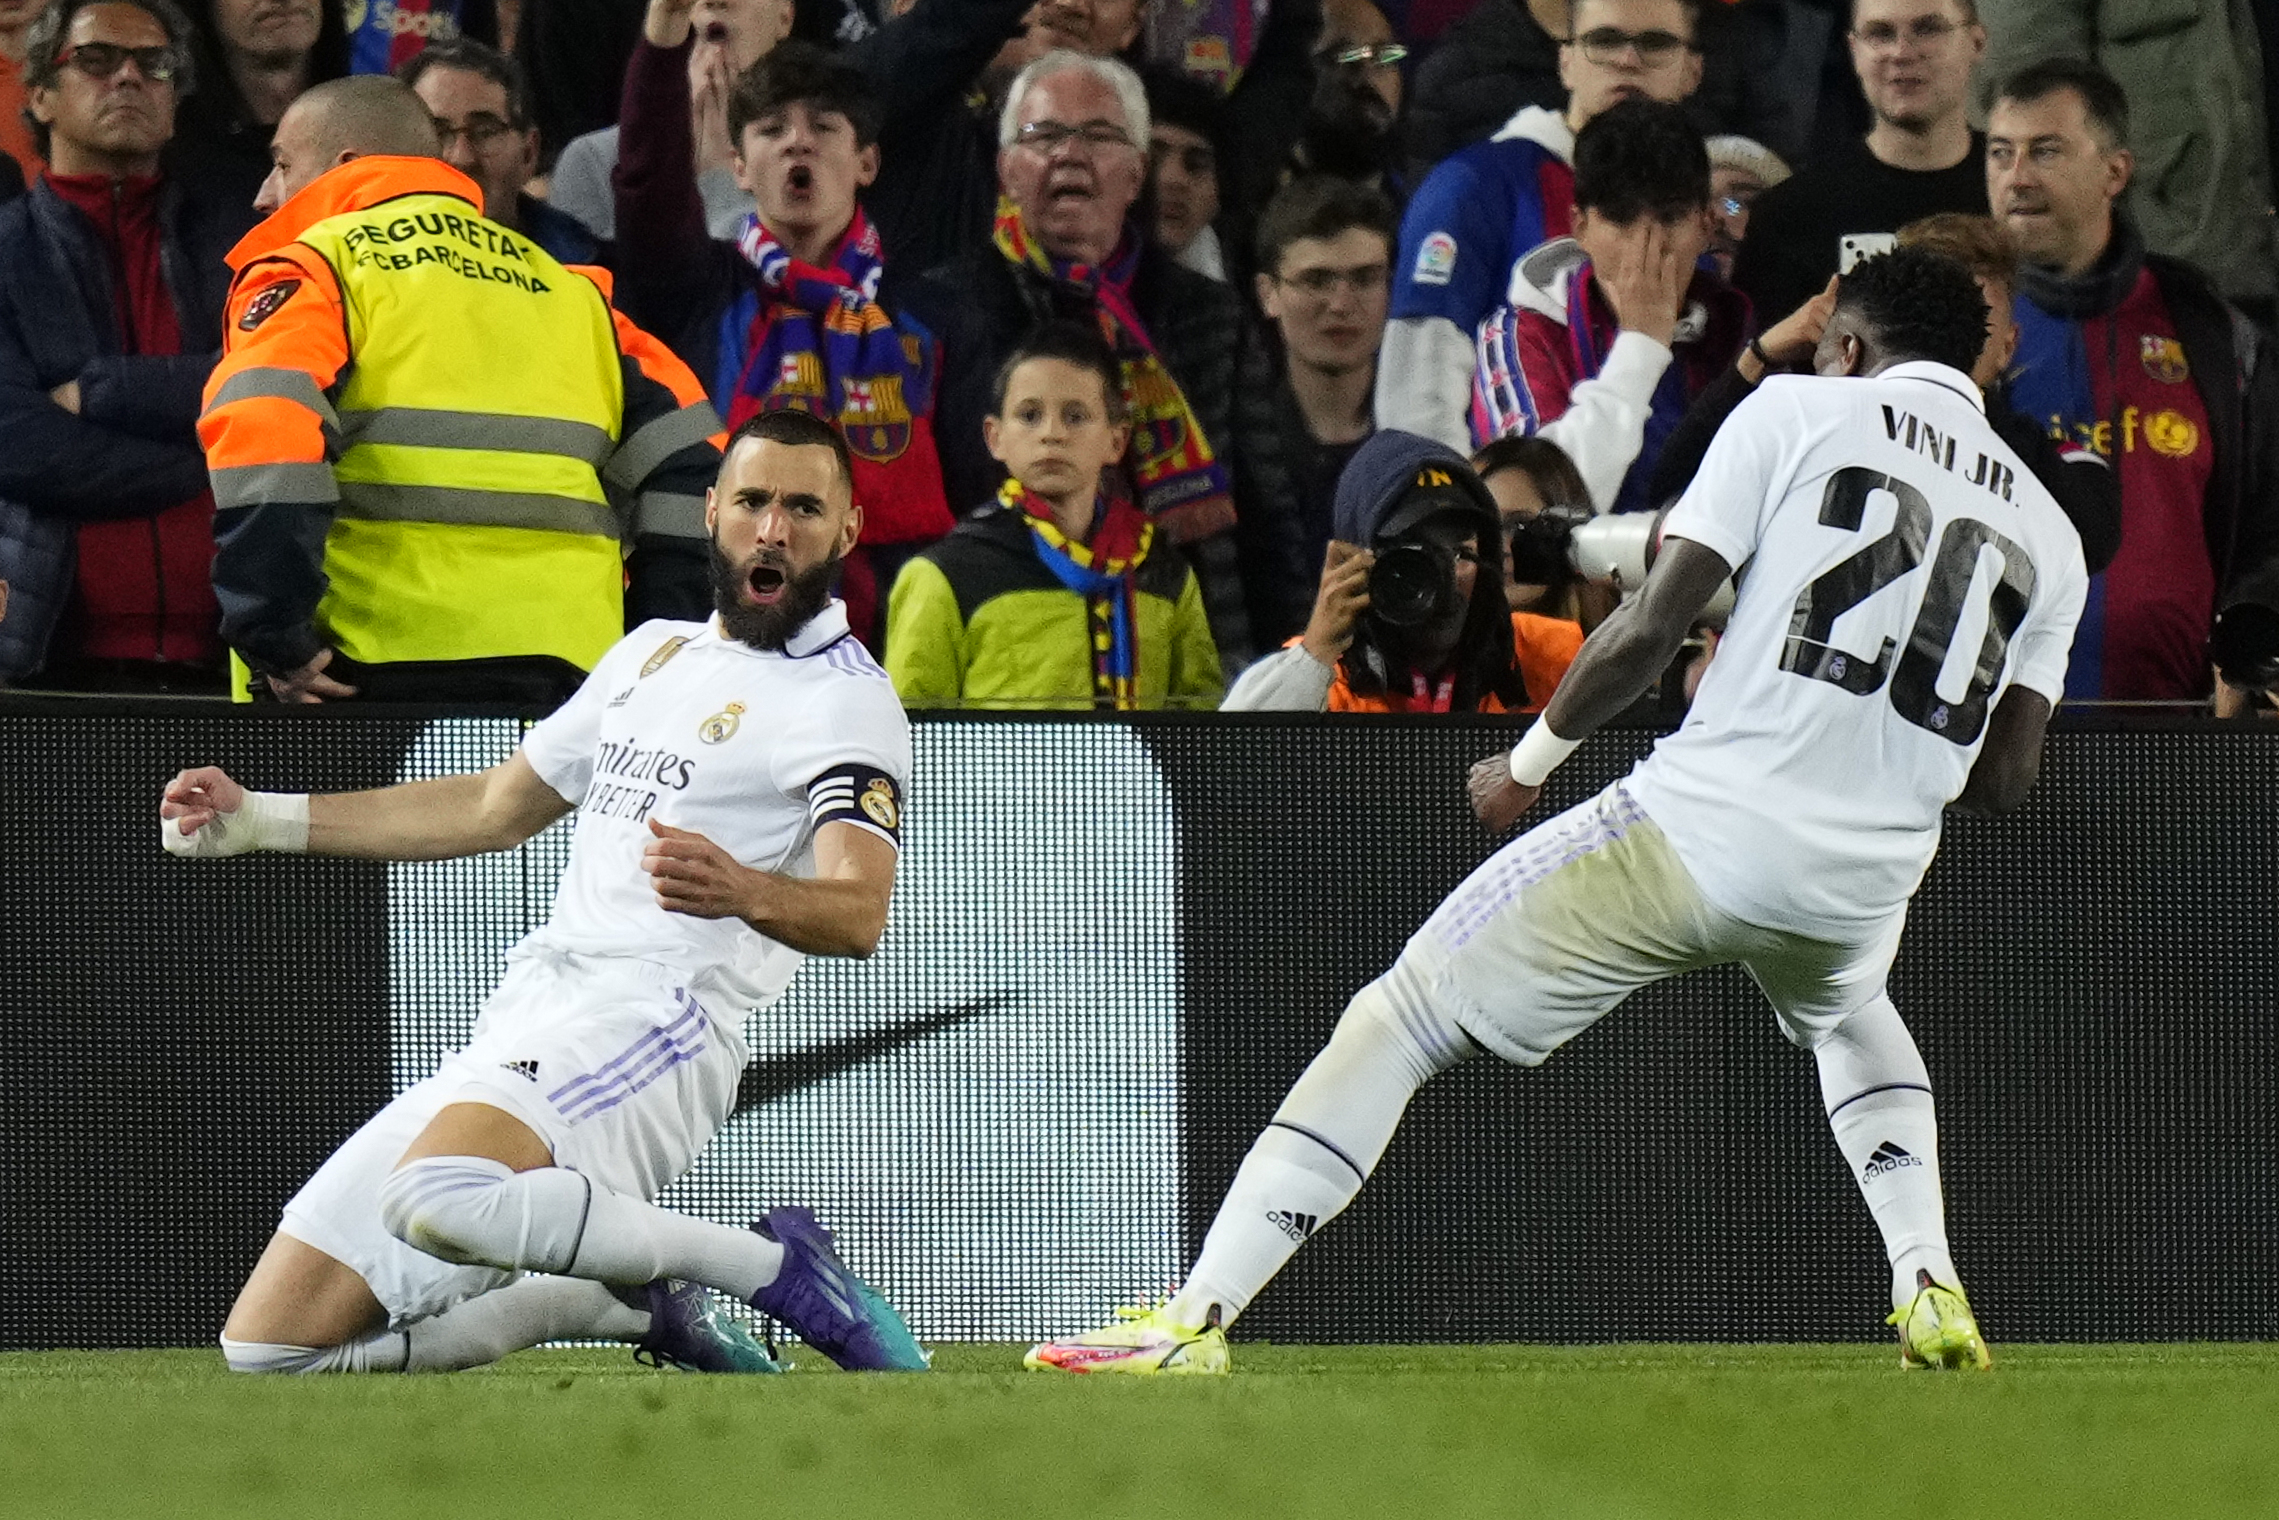 Por qué los jugadores del Real Madrid se huelen la playera?